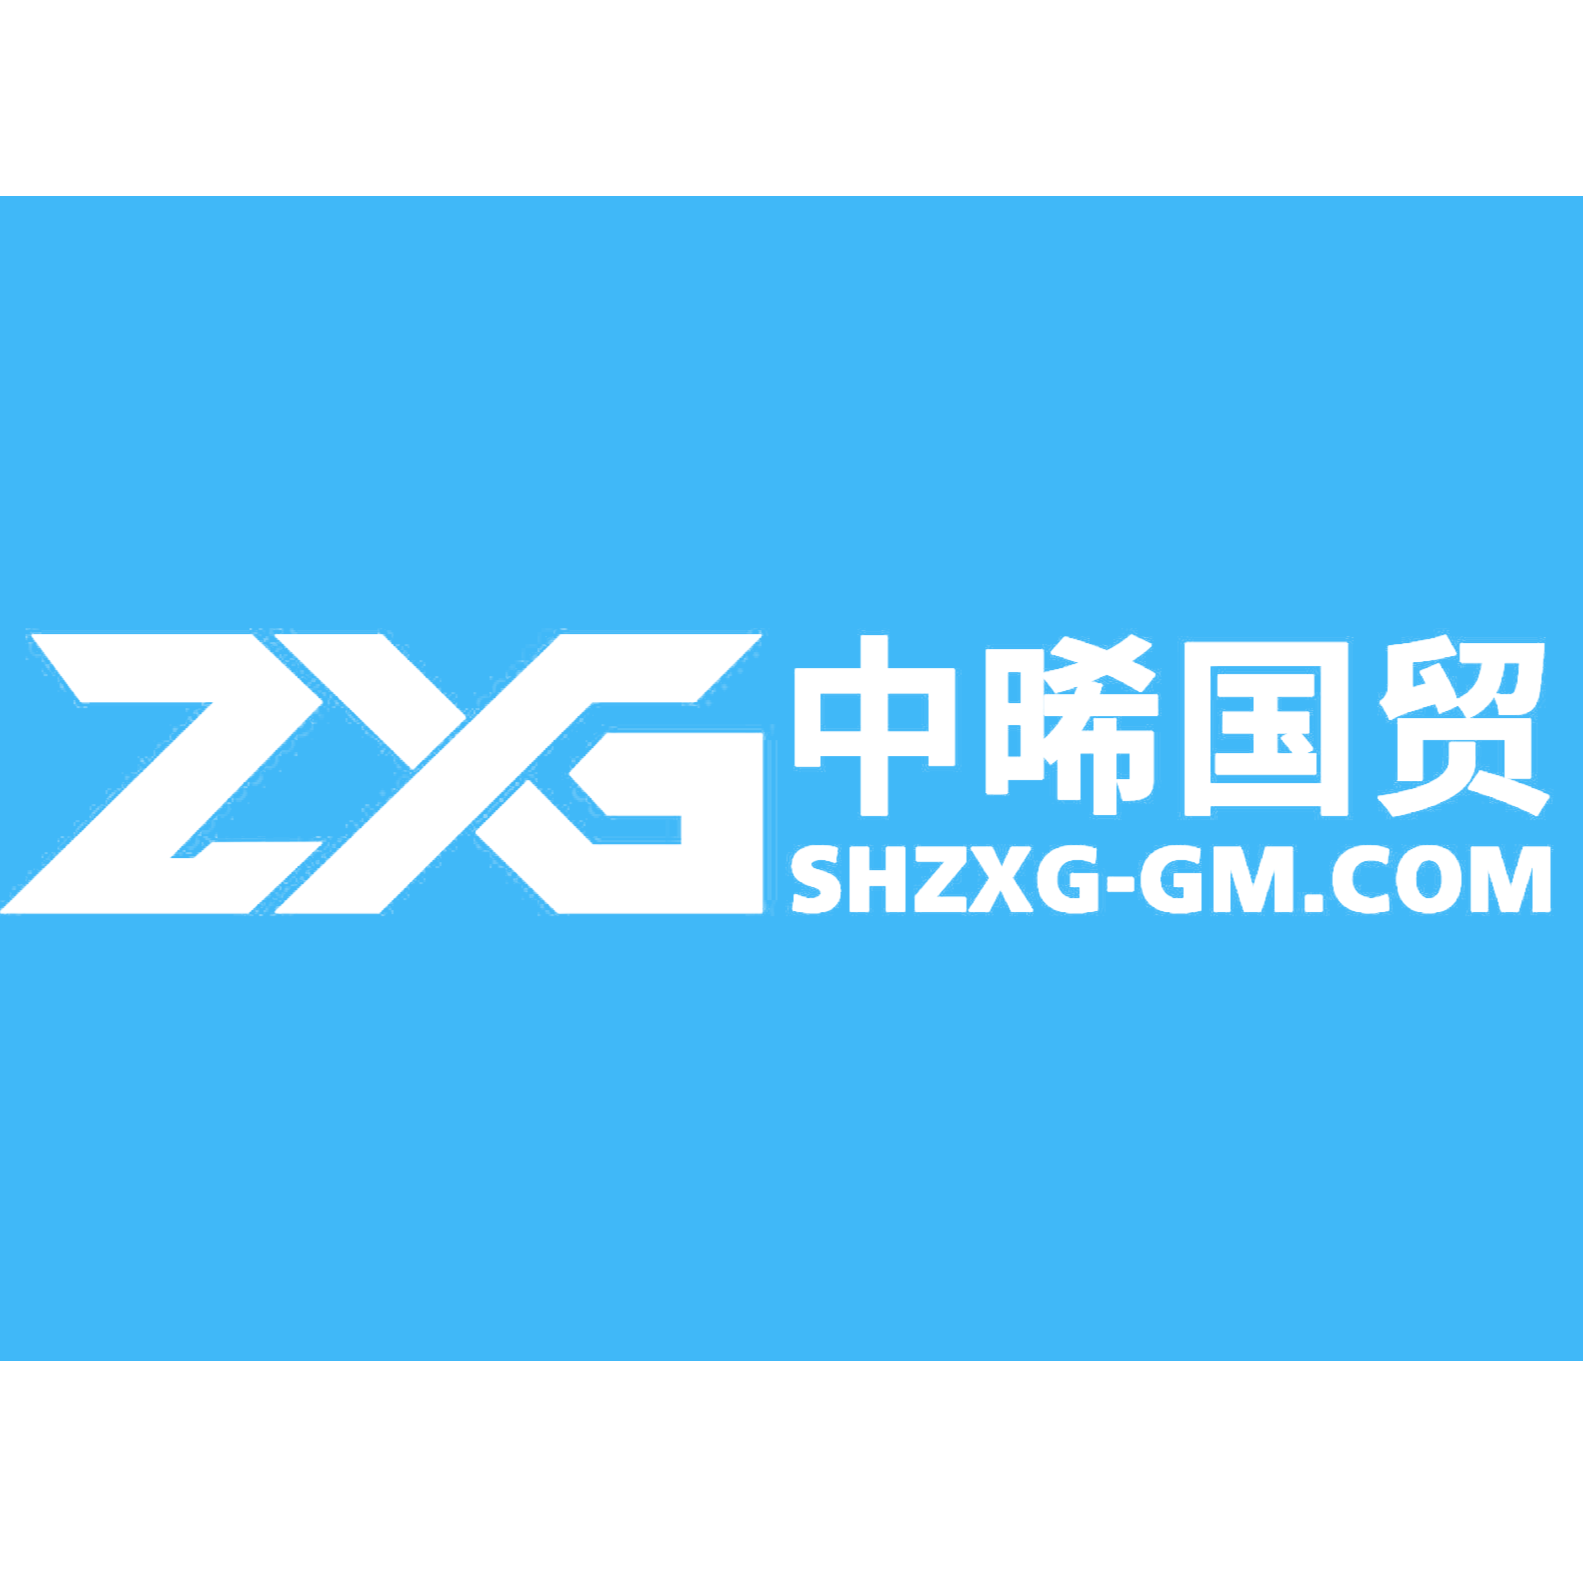 上海中晞国际贸易发展有限公司官微中心